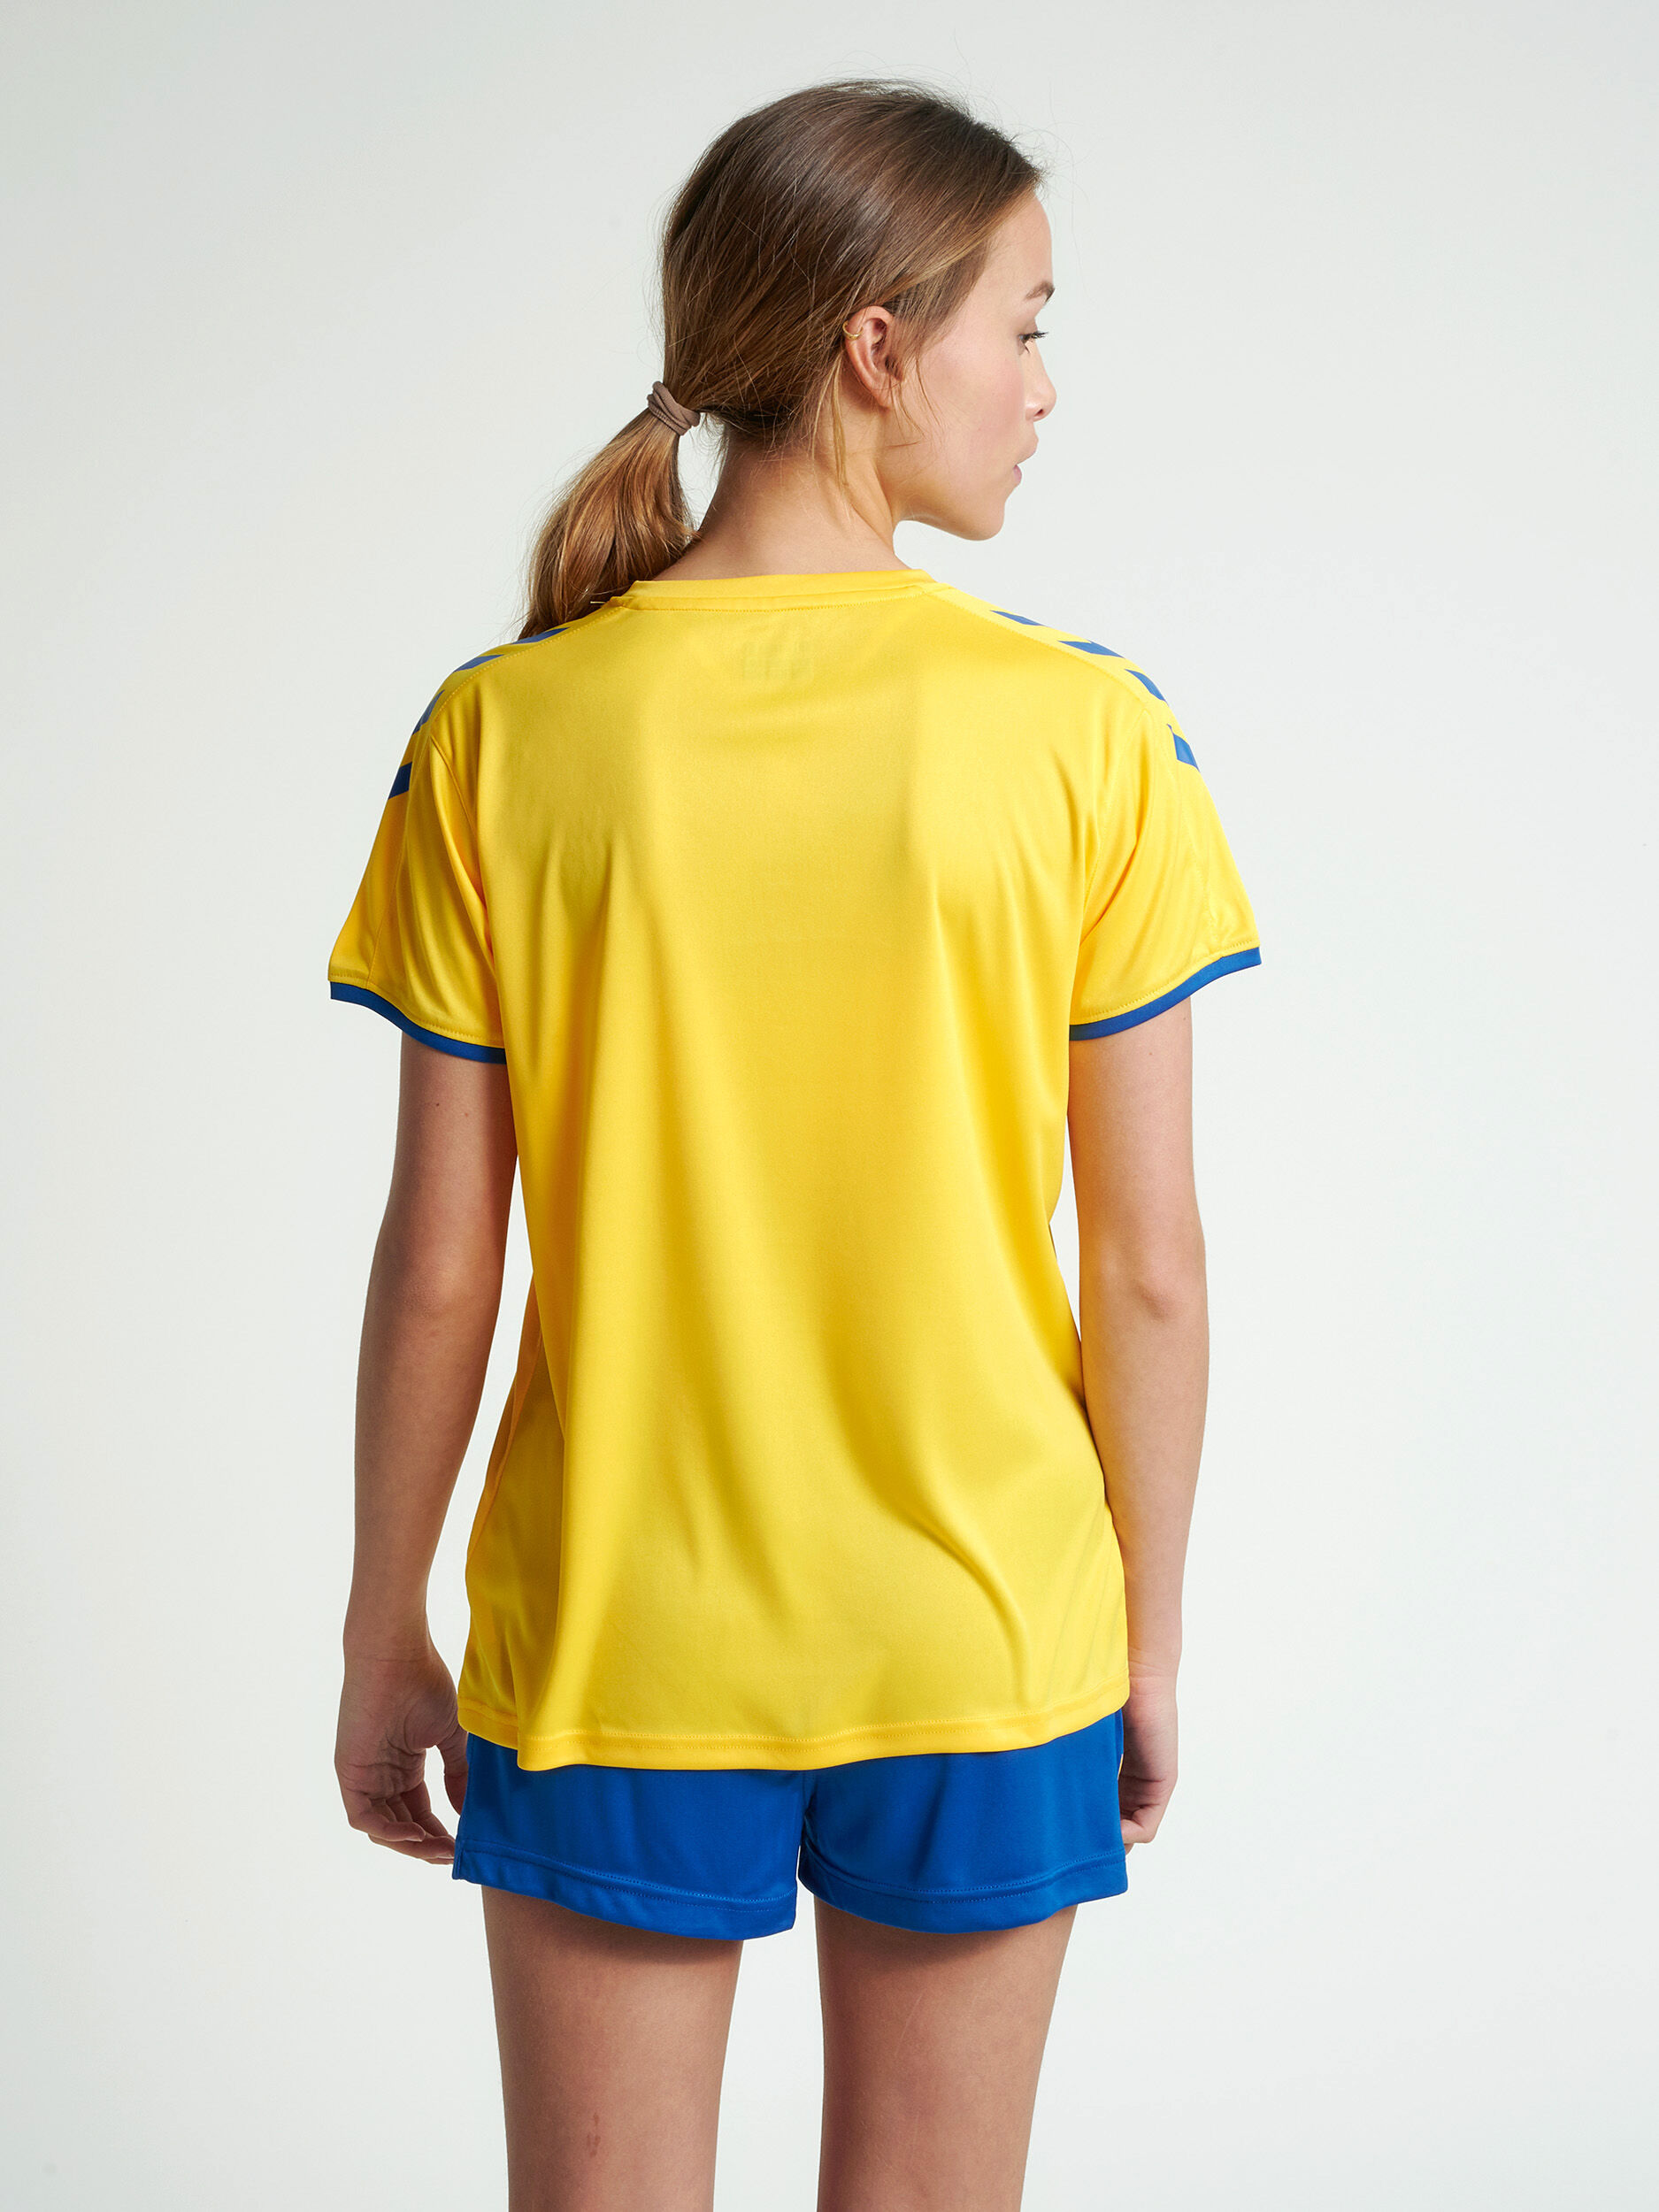 Details about   Hummel Core Womens Football Sports Training Workout Short Sleeve SS Jersey Shirt